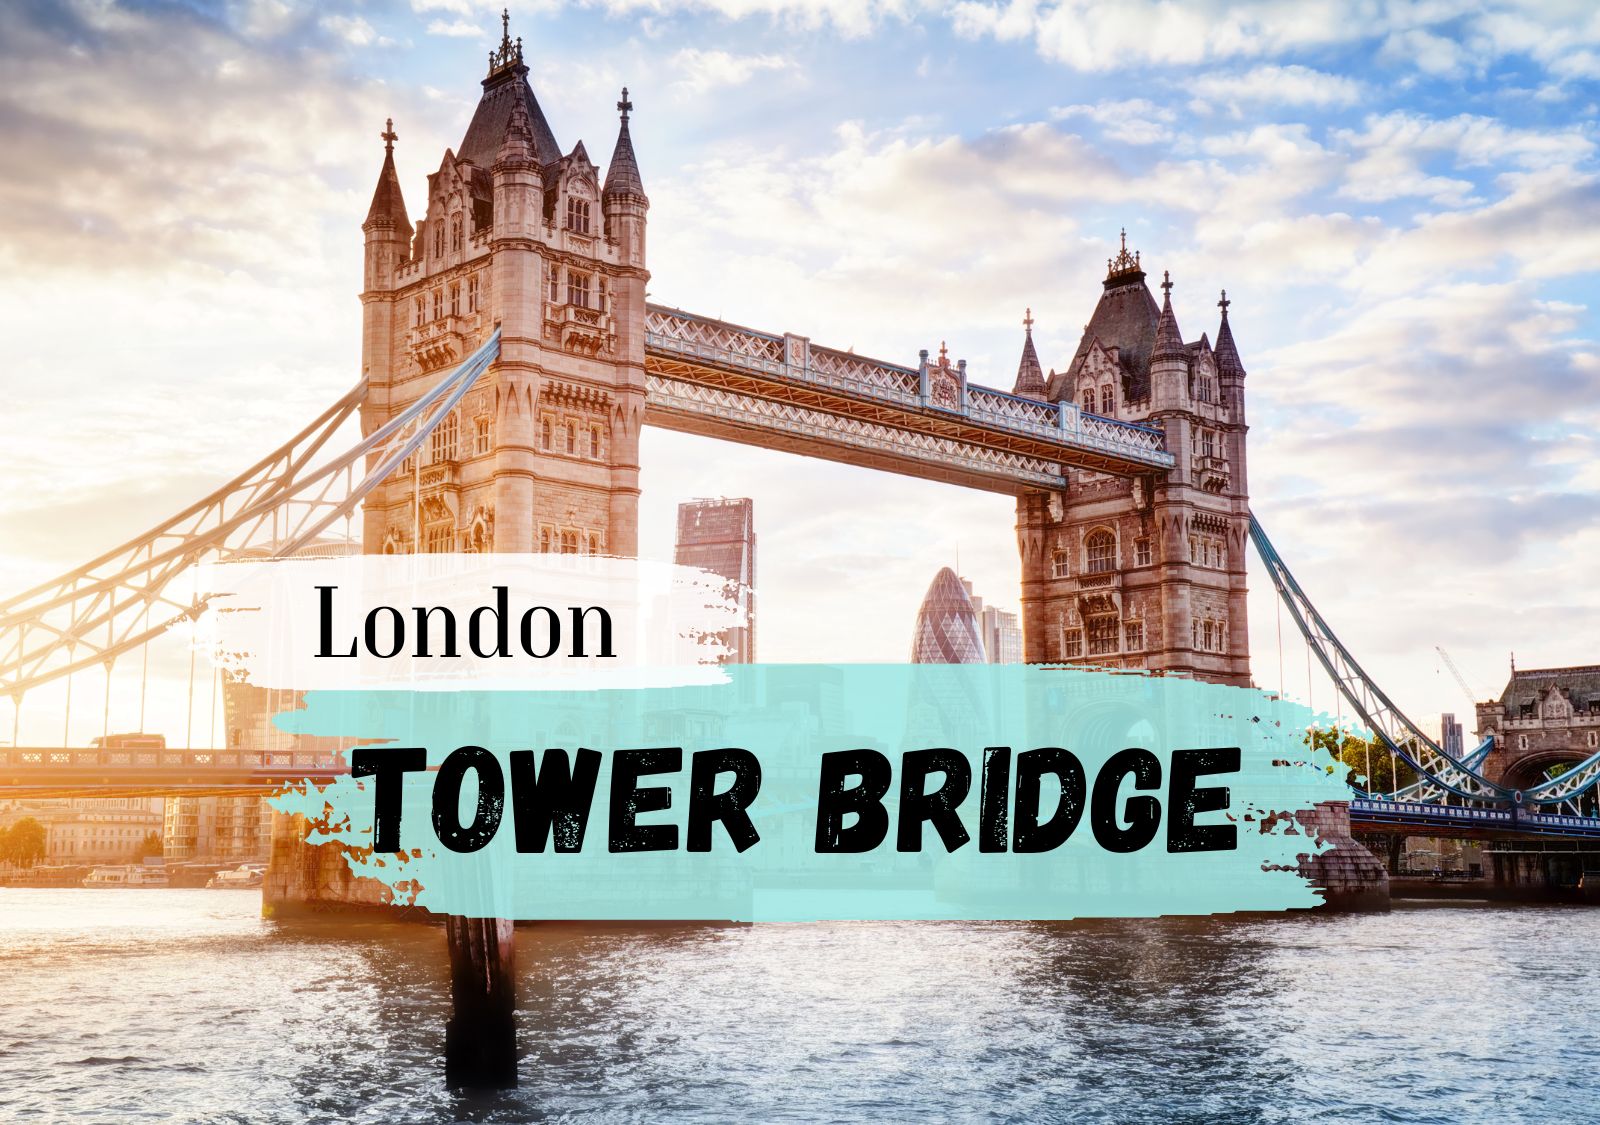 Tower Bridge London Steckbrief - Konstruktion, Eröffnung